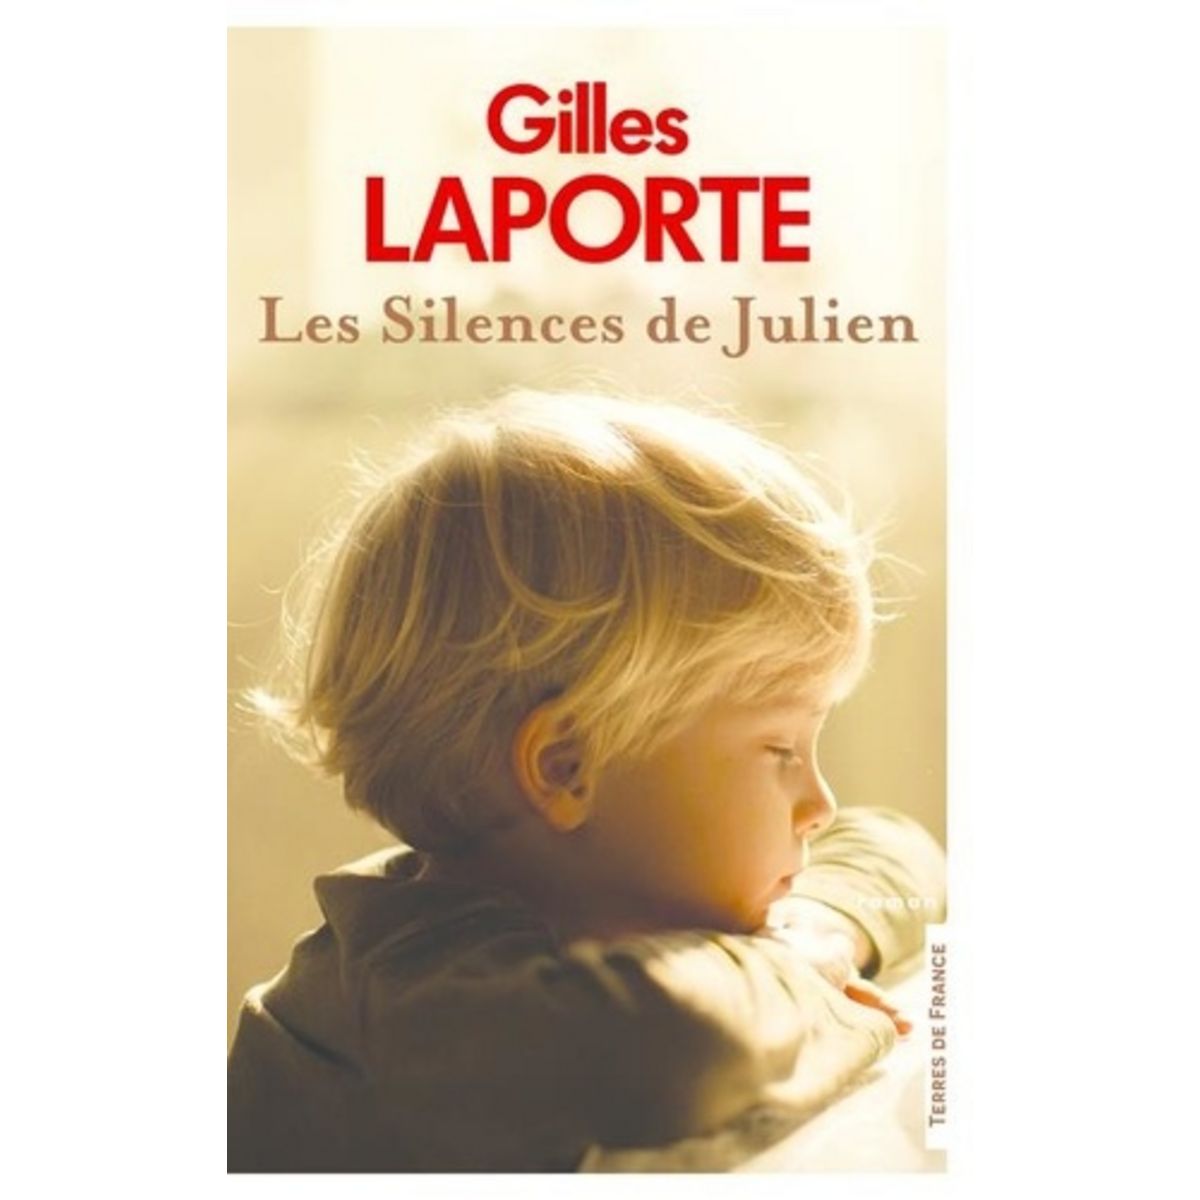  LES SILENCES DE JULIEN, Laporte Gilles